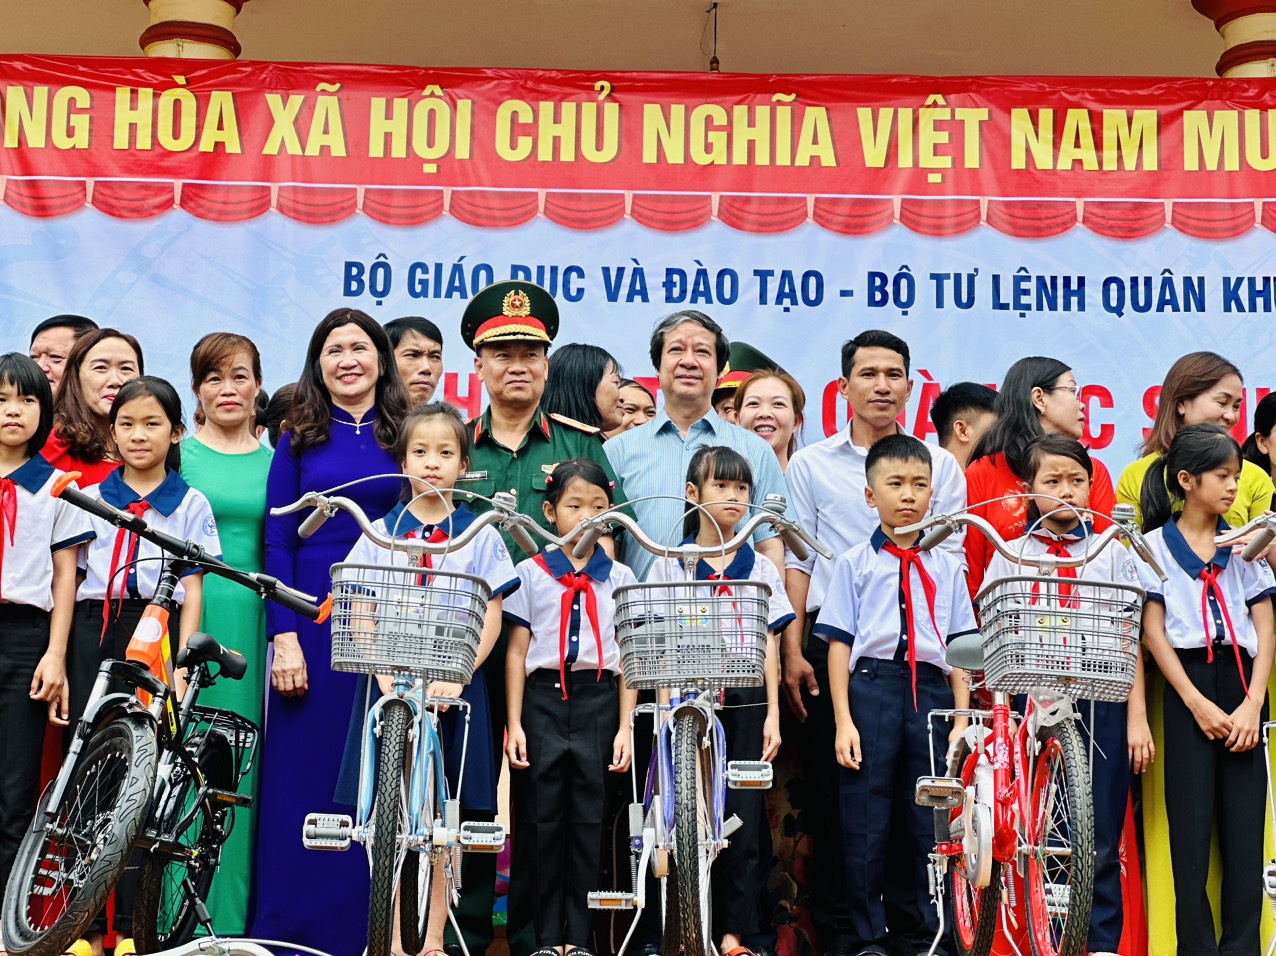 Bộ trưởng Nguyễn Kim Sơn thăm học sinh vùng khó trước thềm năm học mới  ảnh 3